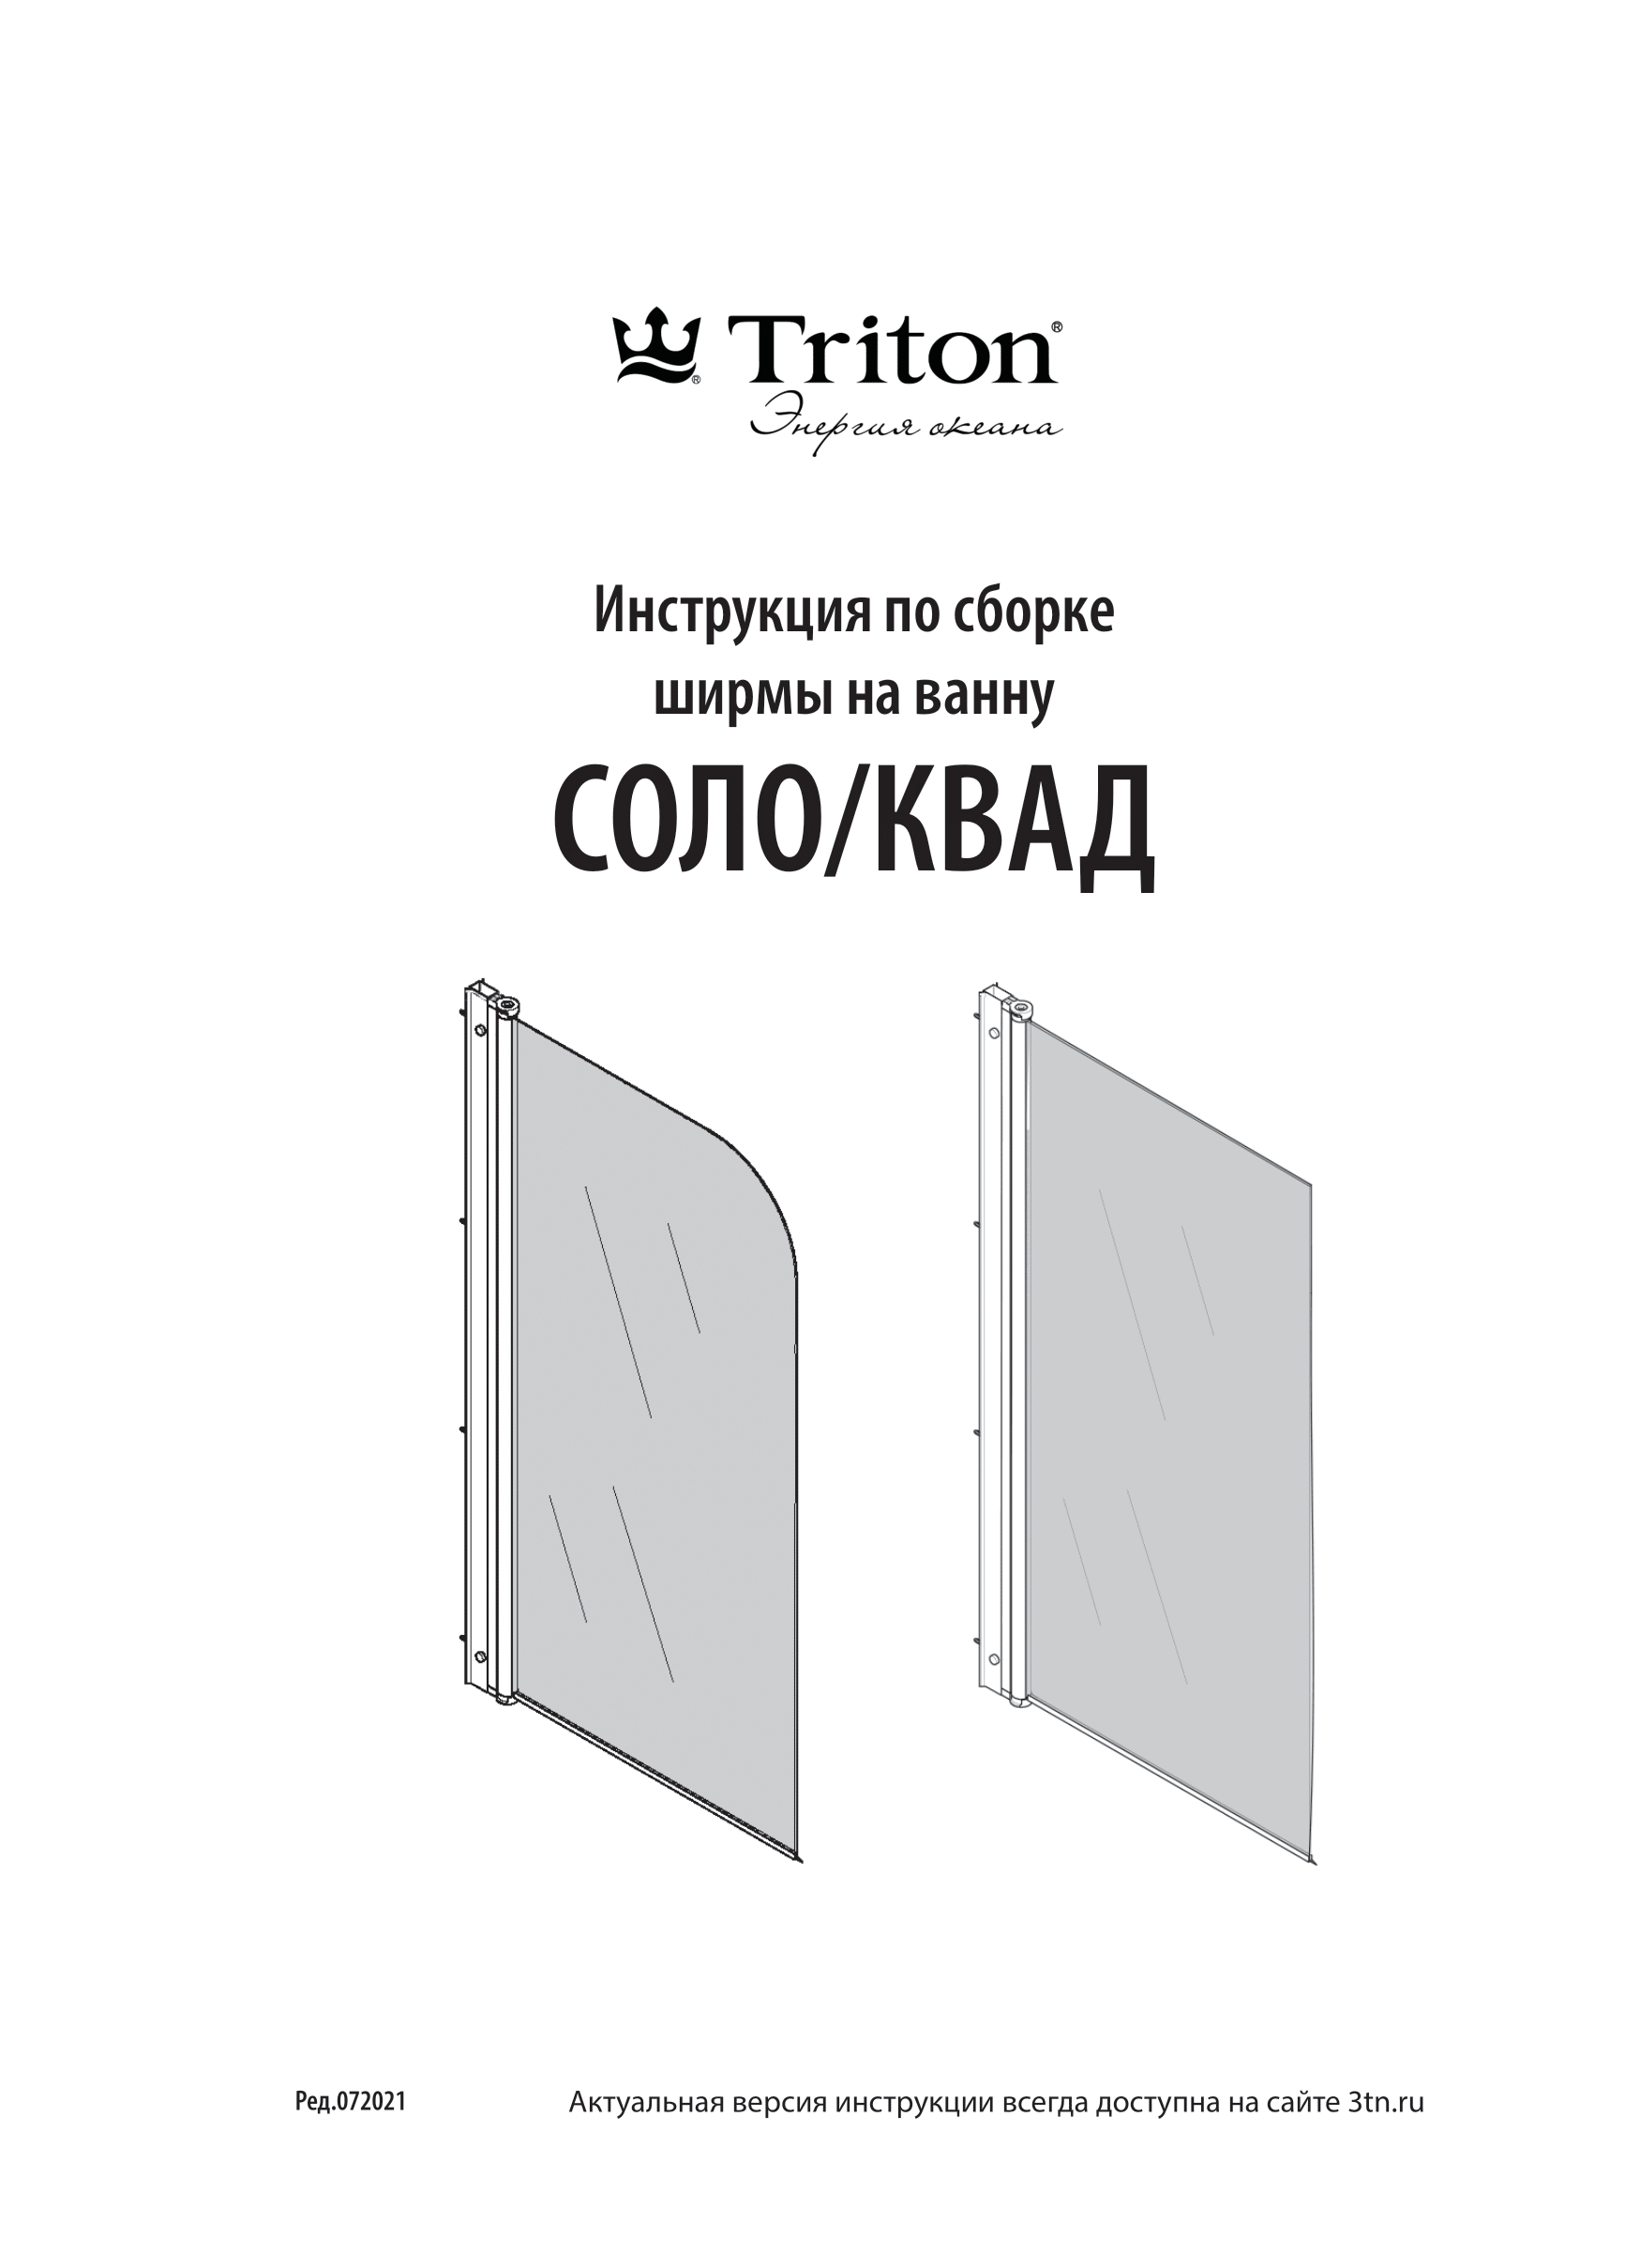 Инструкция по сборке ширмы на ванну СОЛО/КВАД